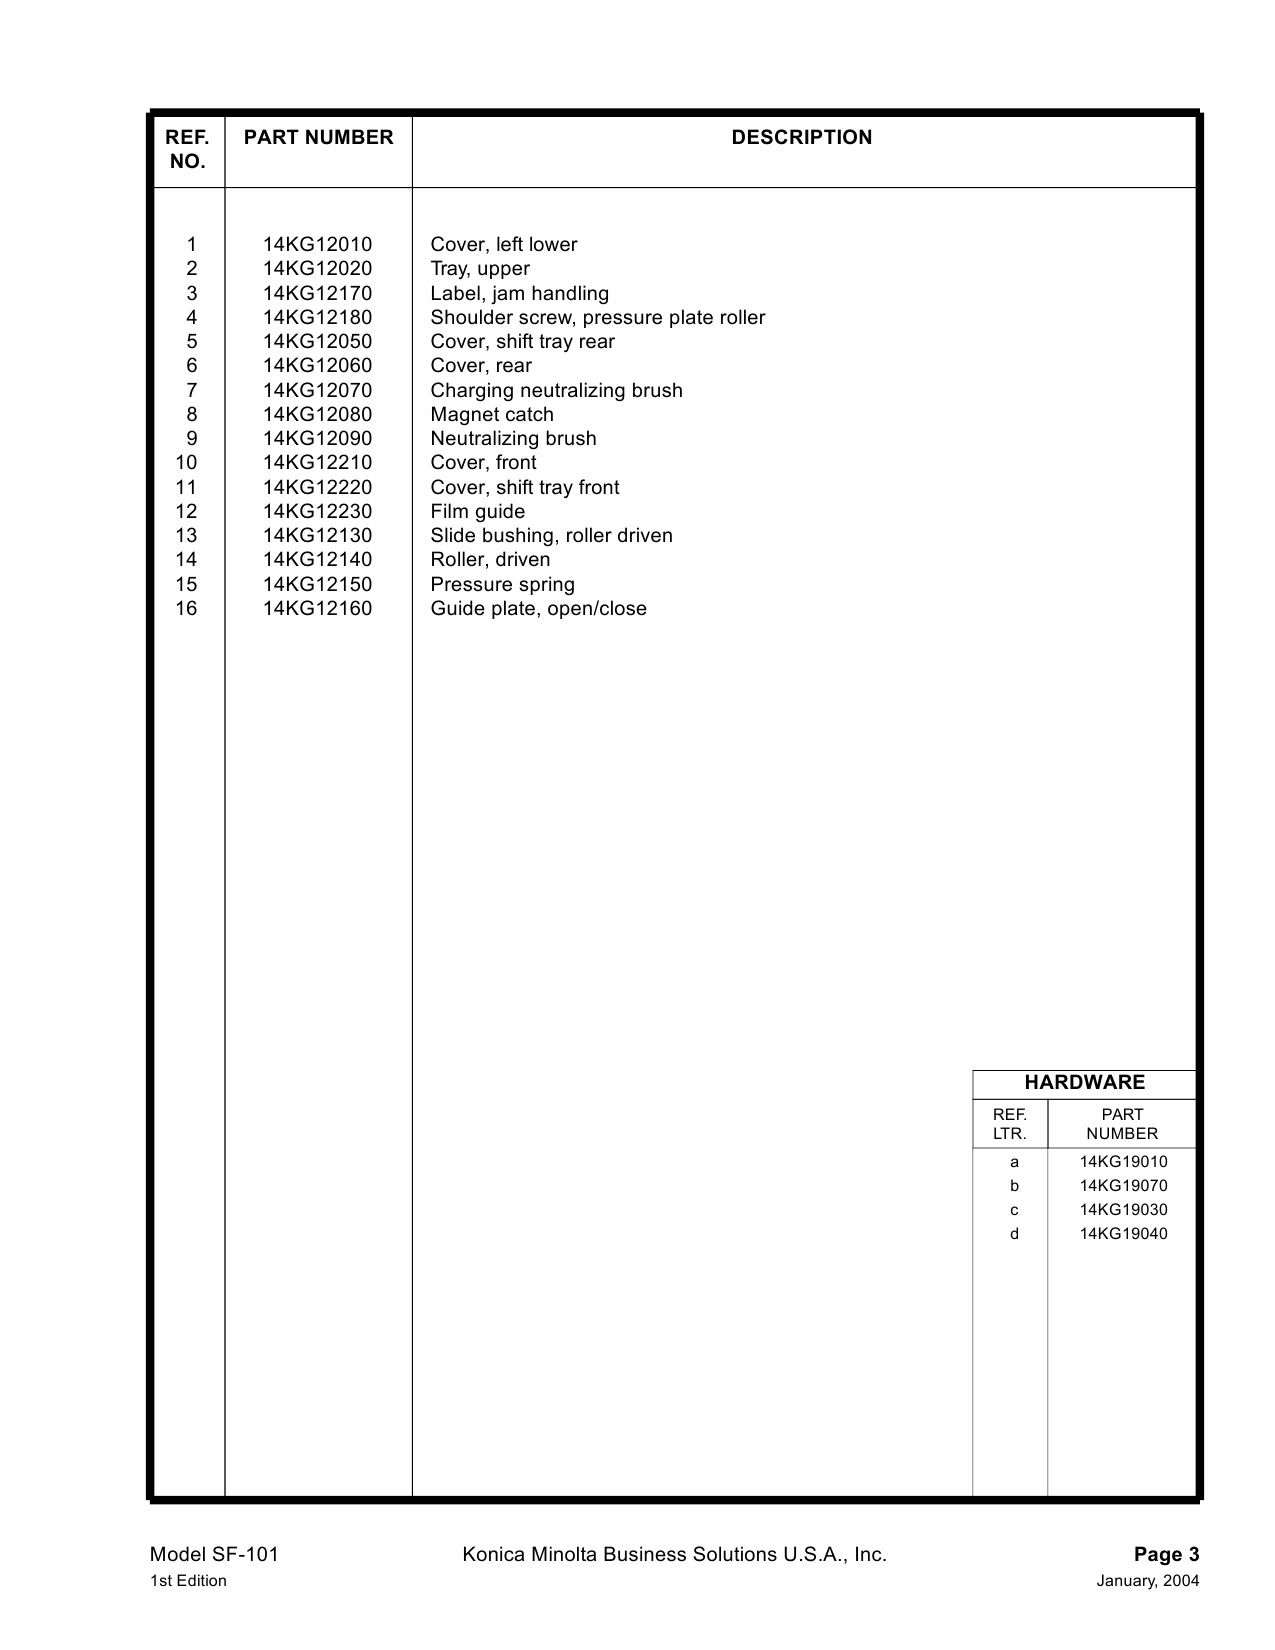 Konica-Minolta Options SF-101 Parts Manual-2